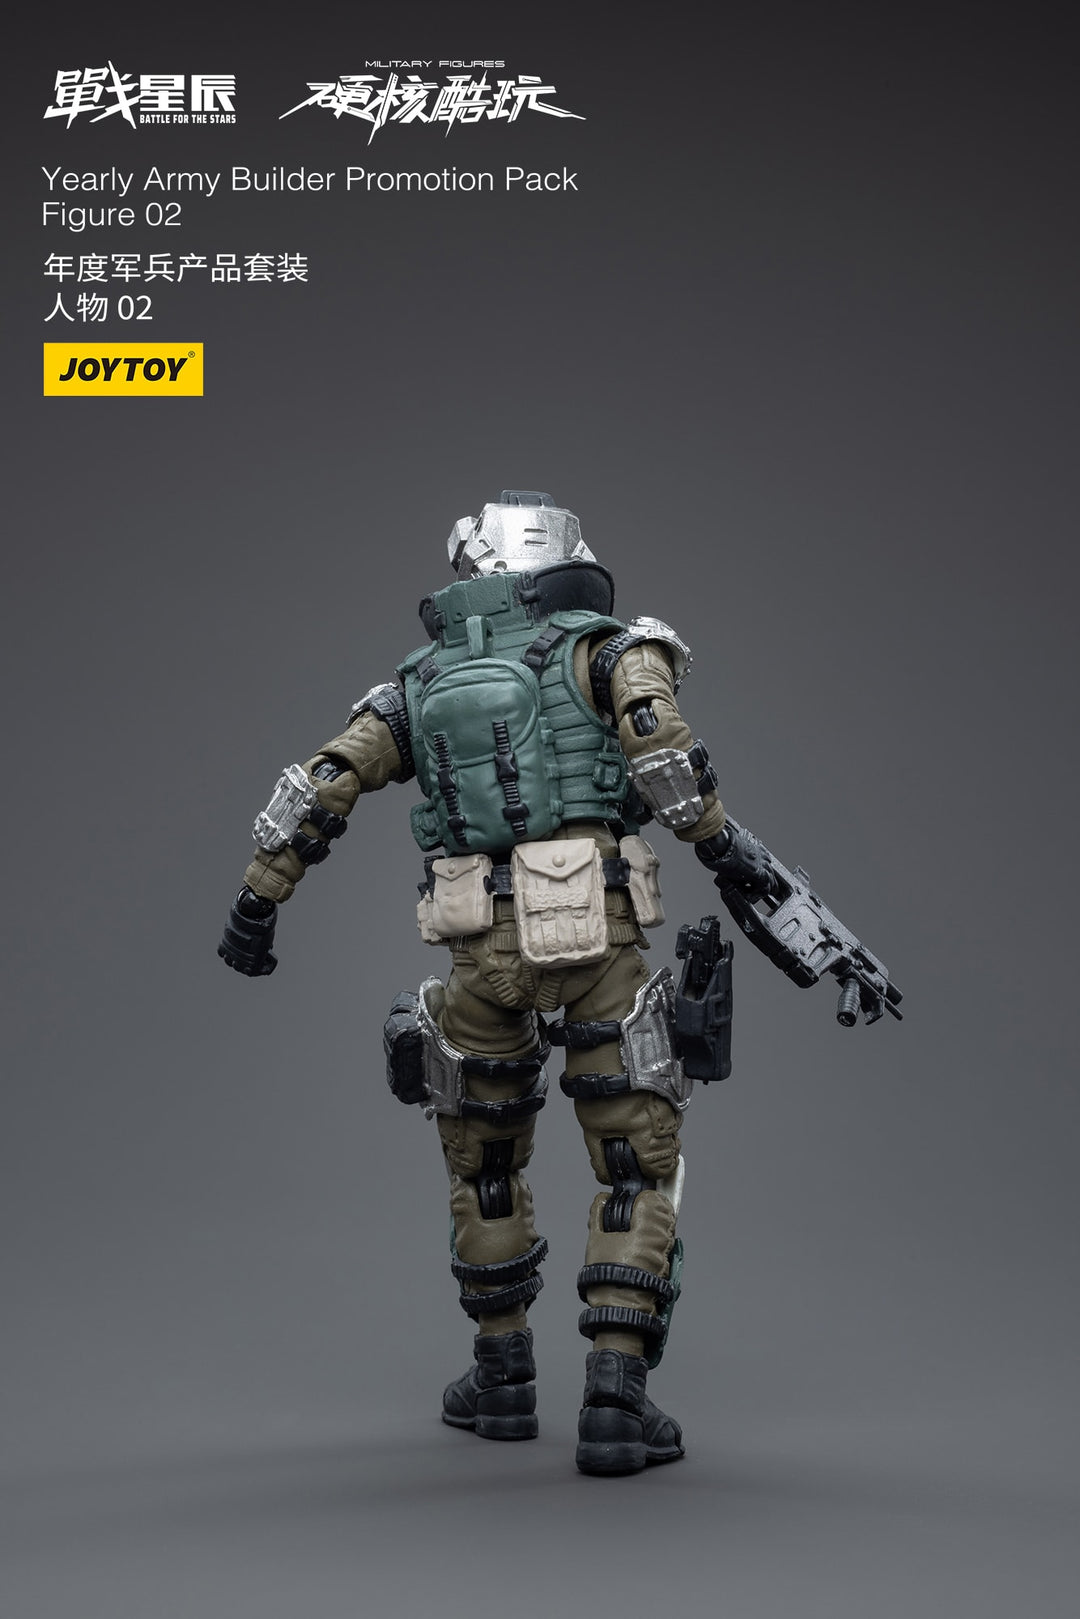 イヤリーアミービルダー プロモーションパックフィギュア02 Yearly Army Builder Promotion Pack Figure 02 1/18スケール